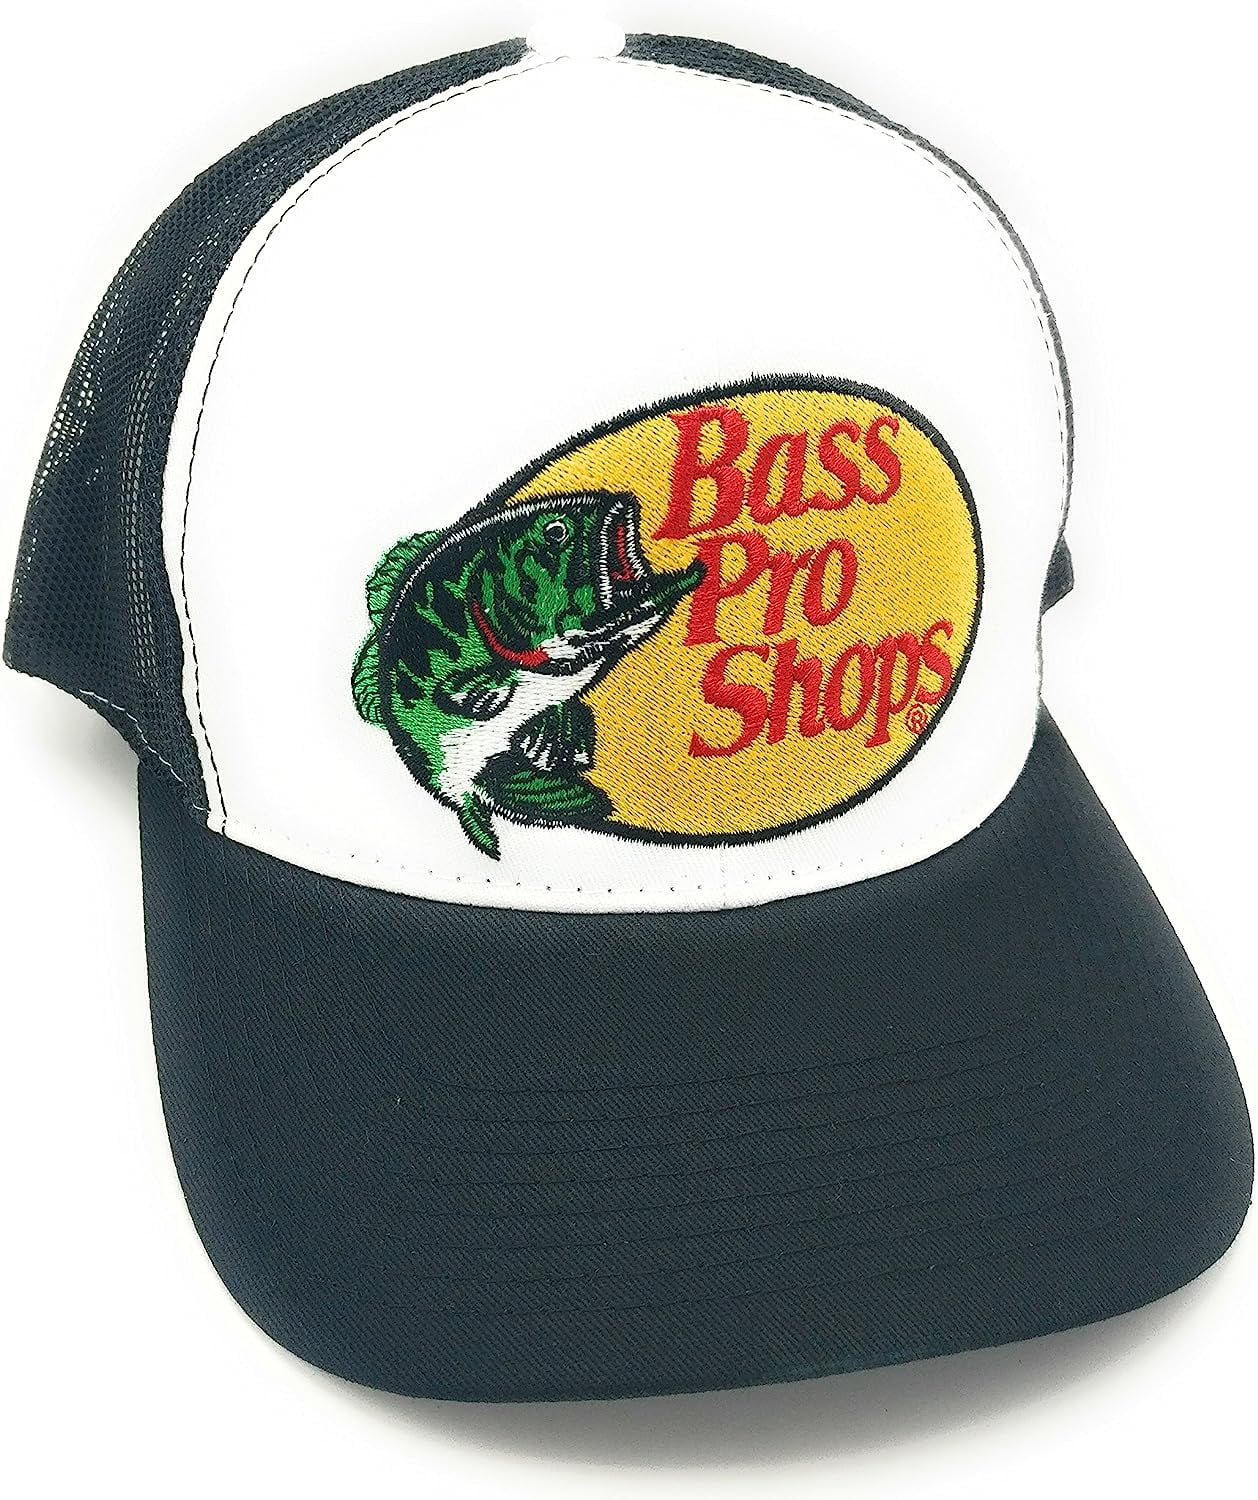 Bass Pro Shops Hat (Black) - Walmart.com